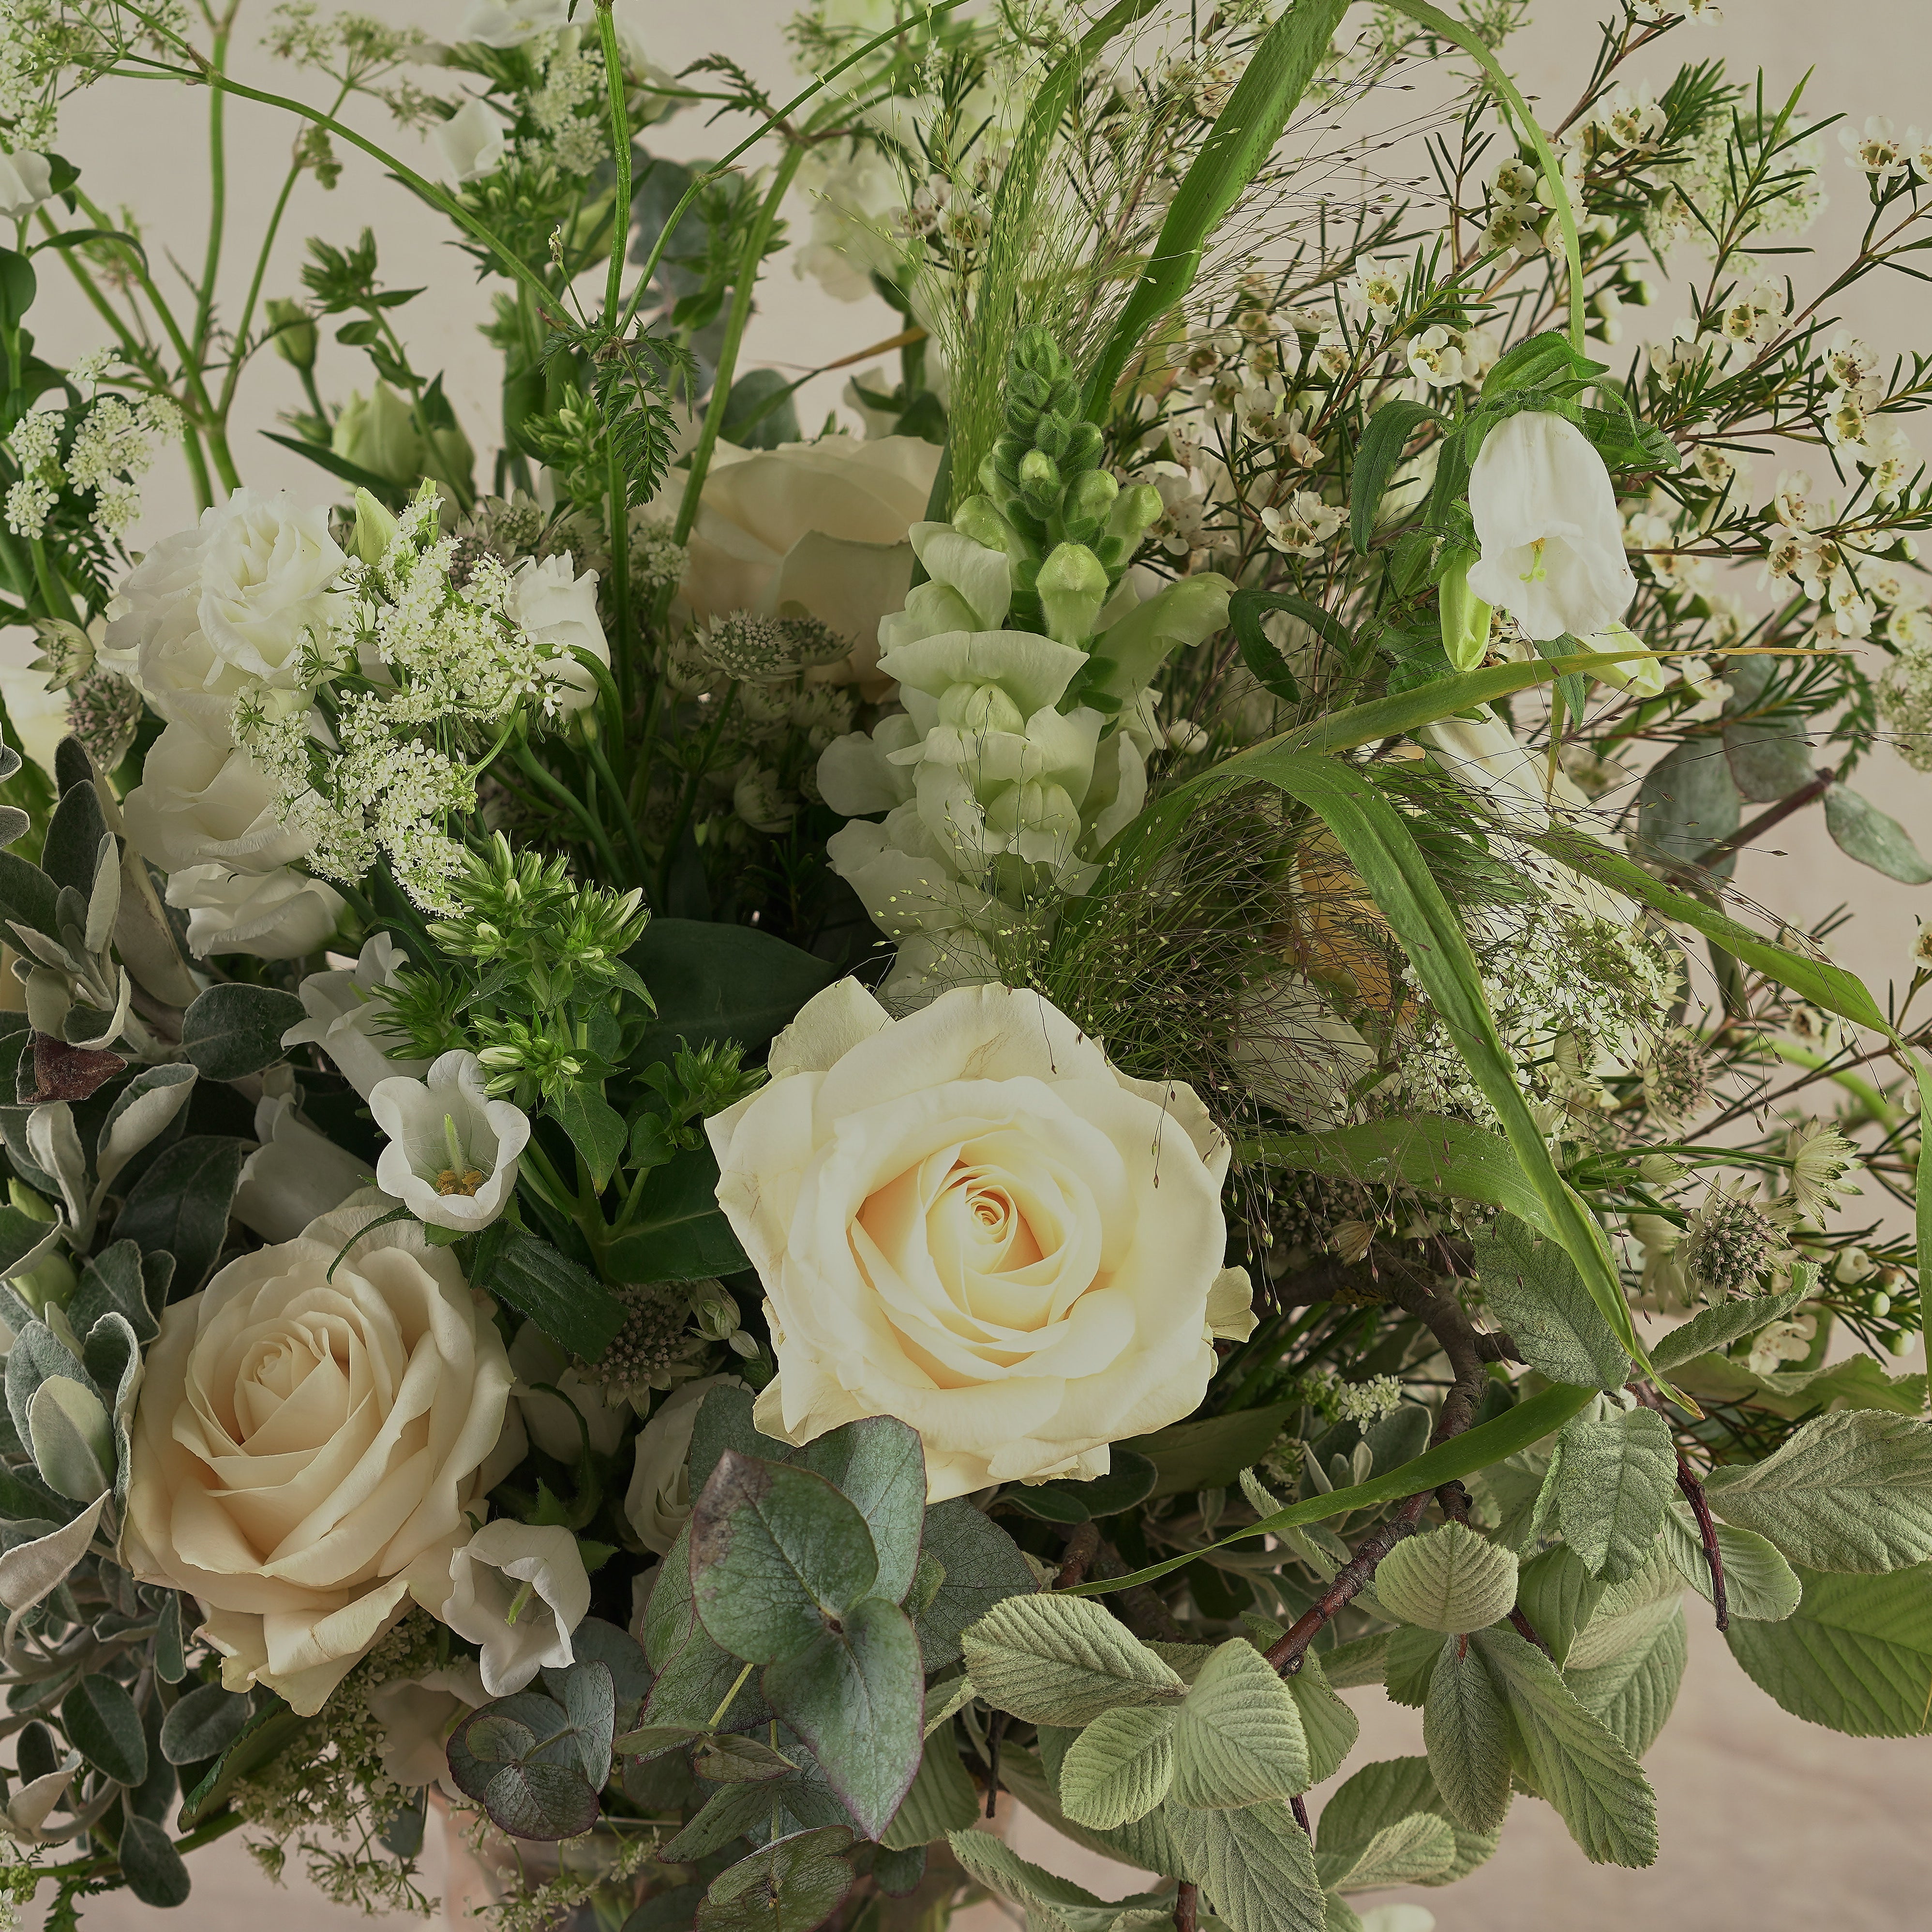 Whimsical Whites Vase Arrangements